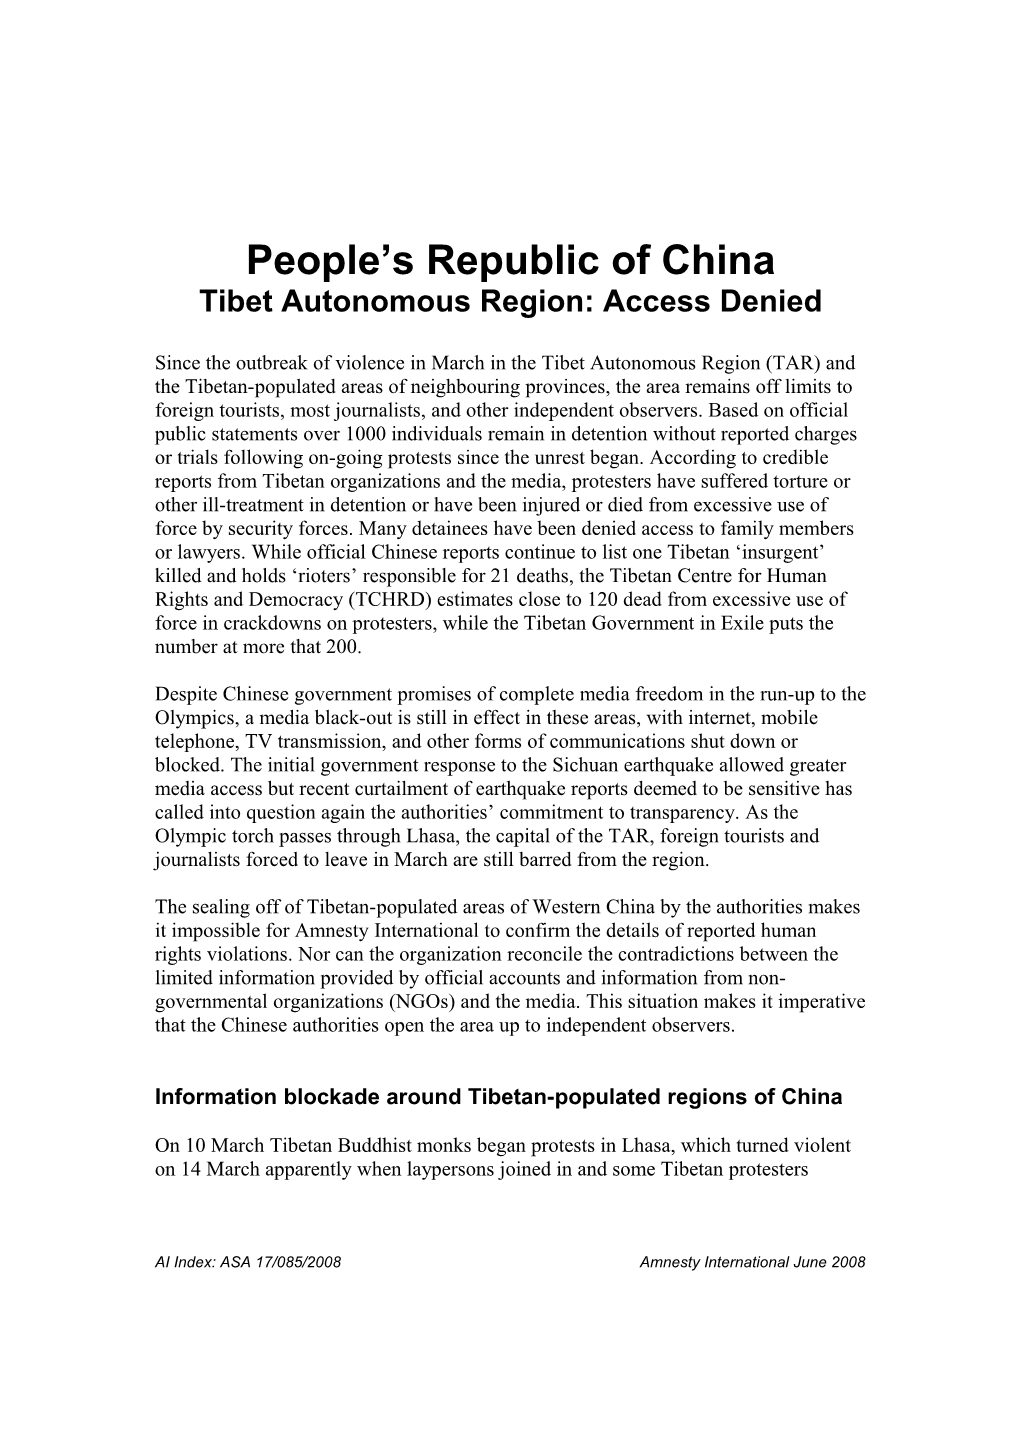 Tibet Autonomous Region: Access Denied